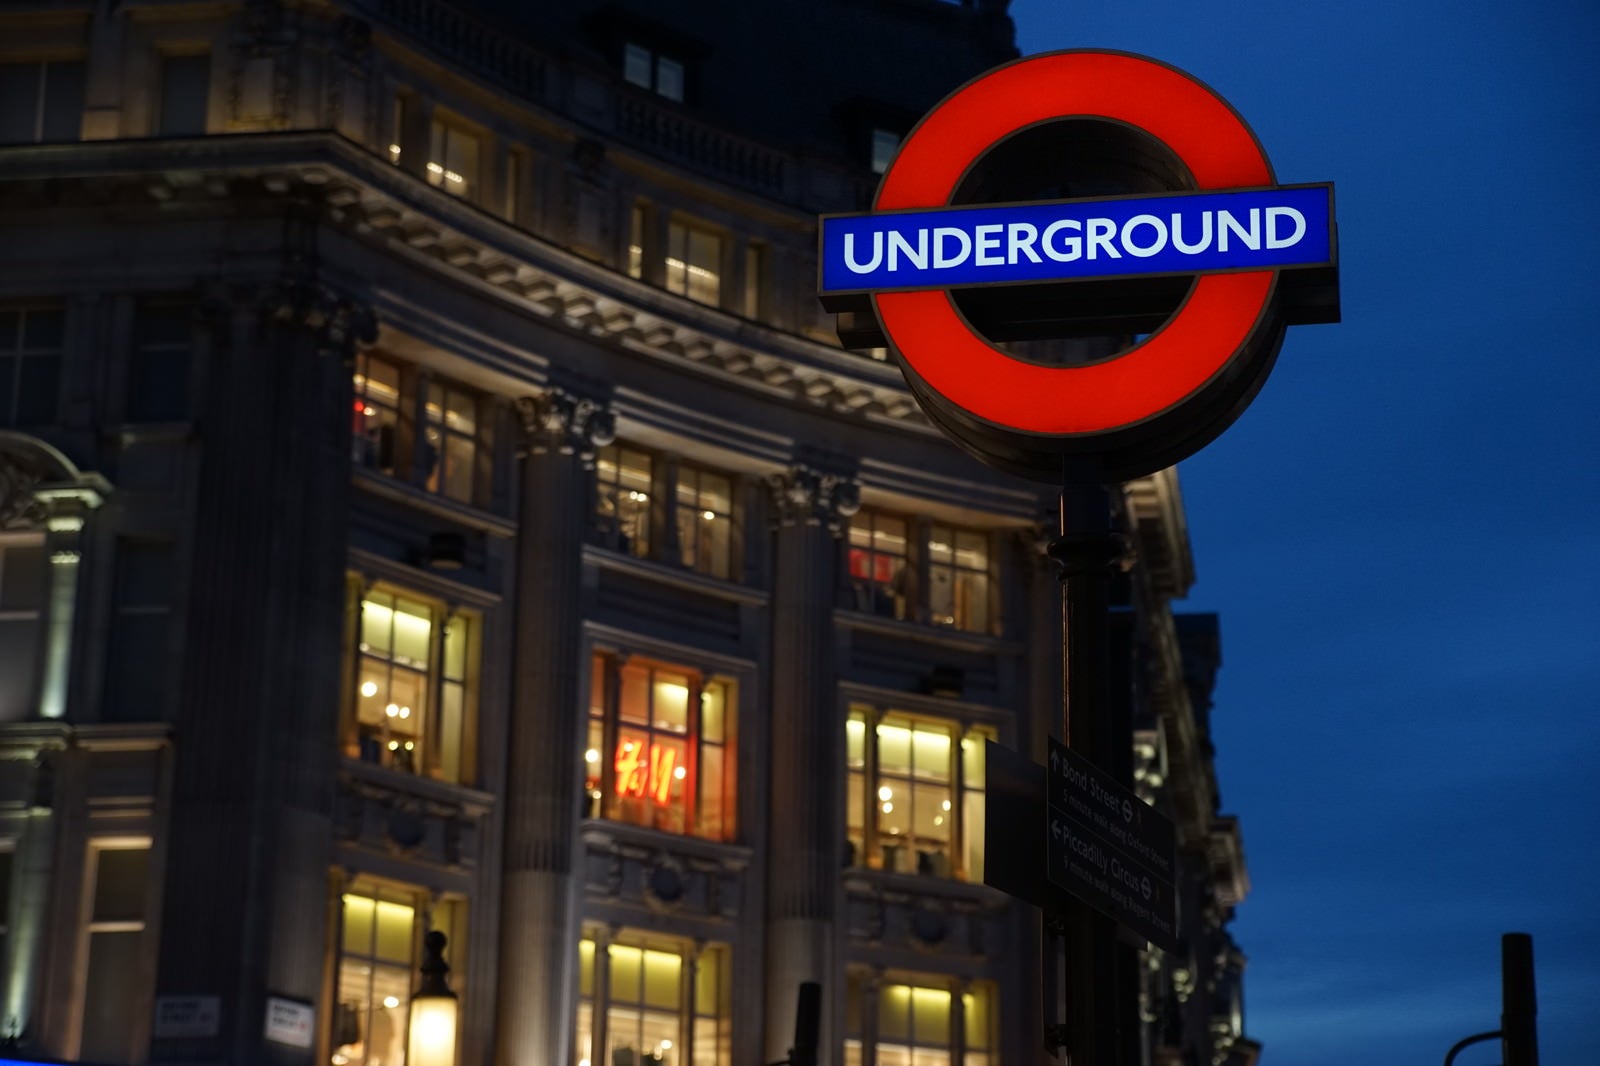 「ロンドンの街並みと地下鉄の入口案内板」の写真